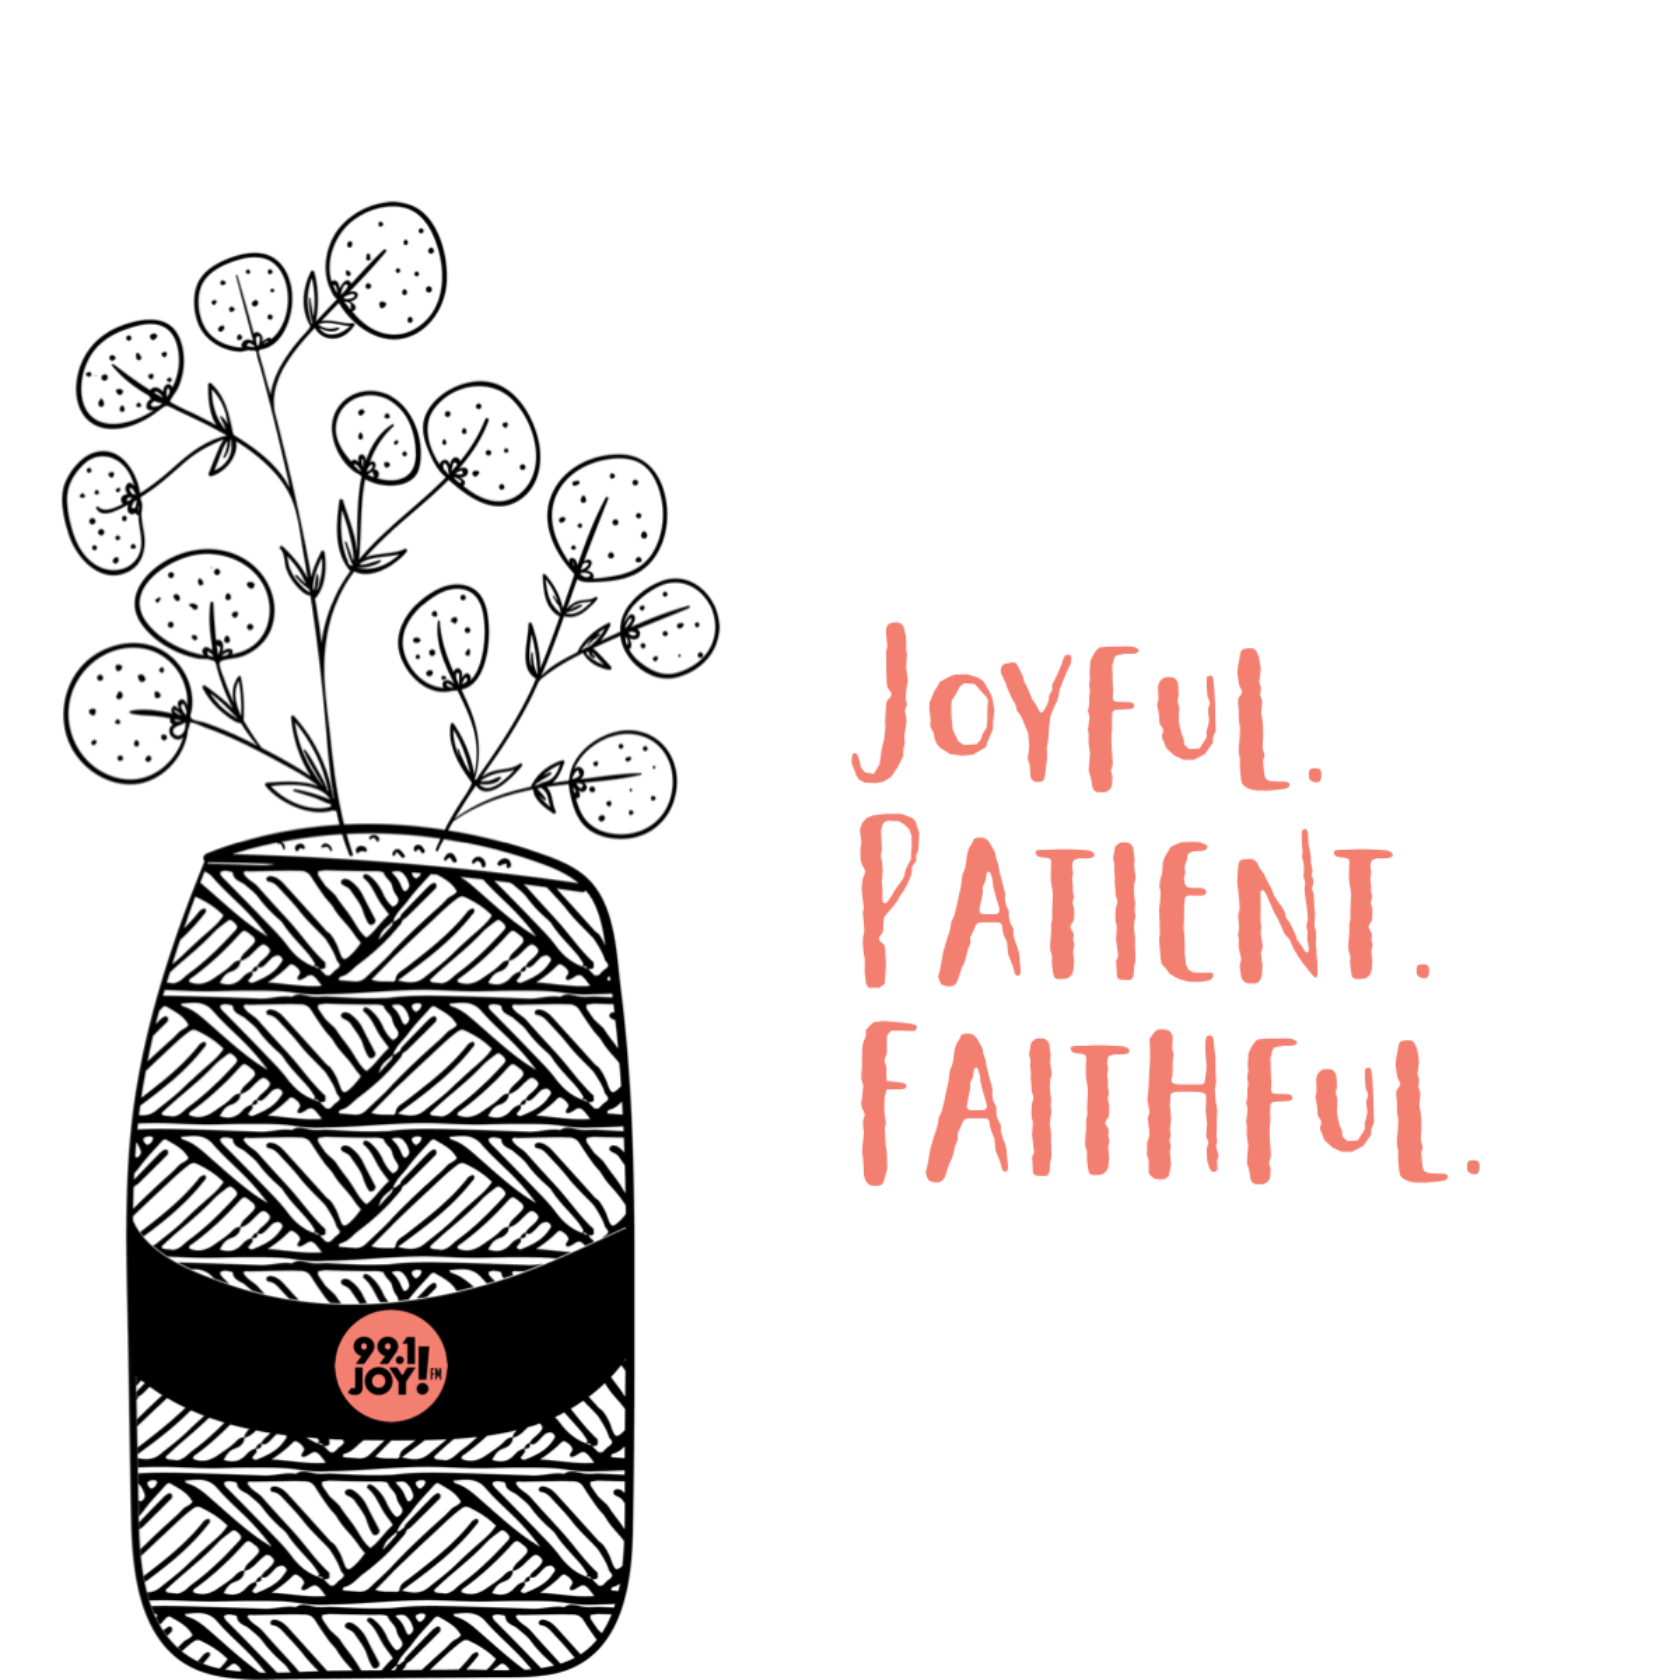 Joyful. Patient. Faithful.